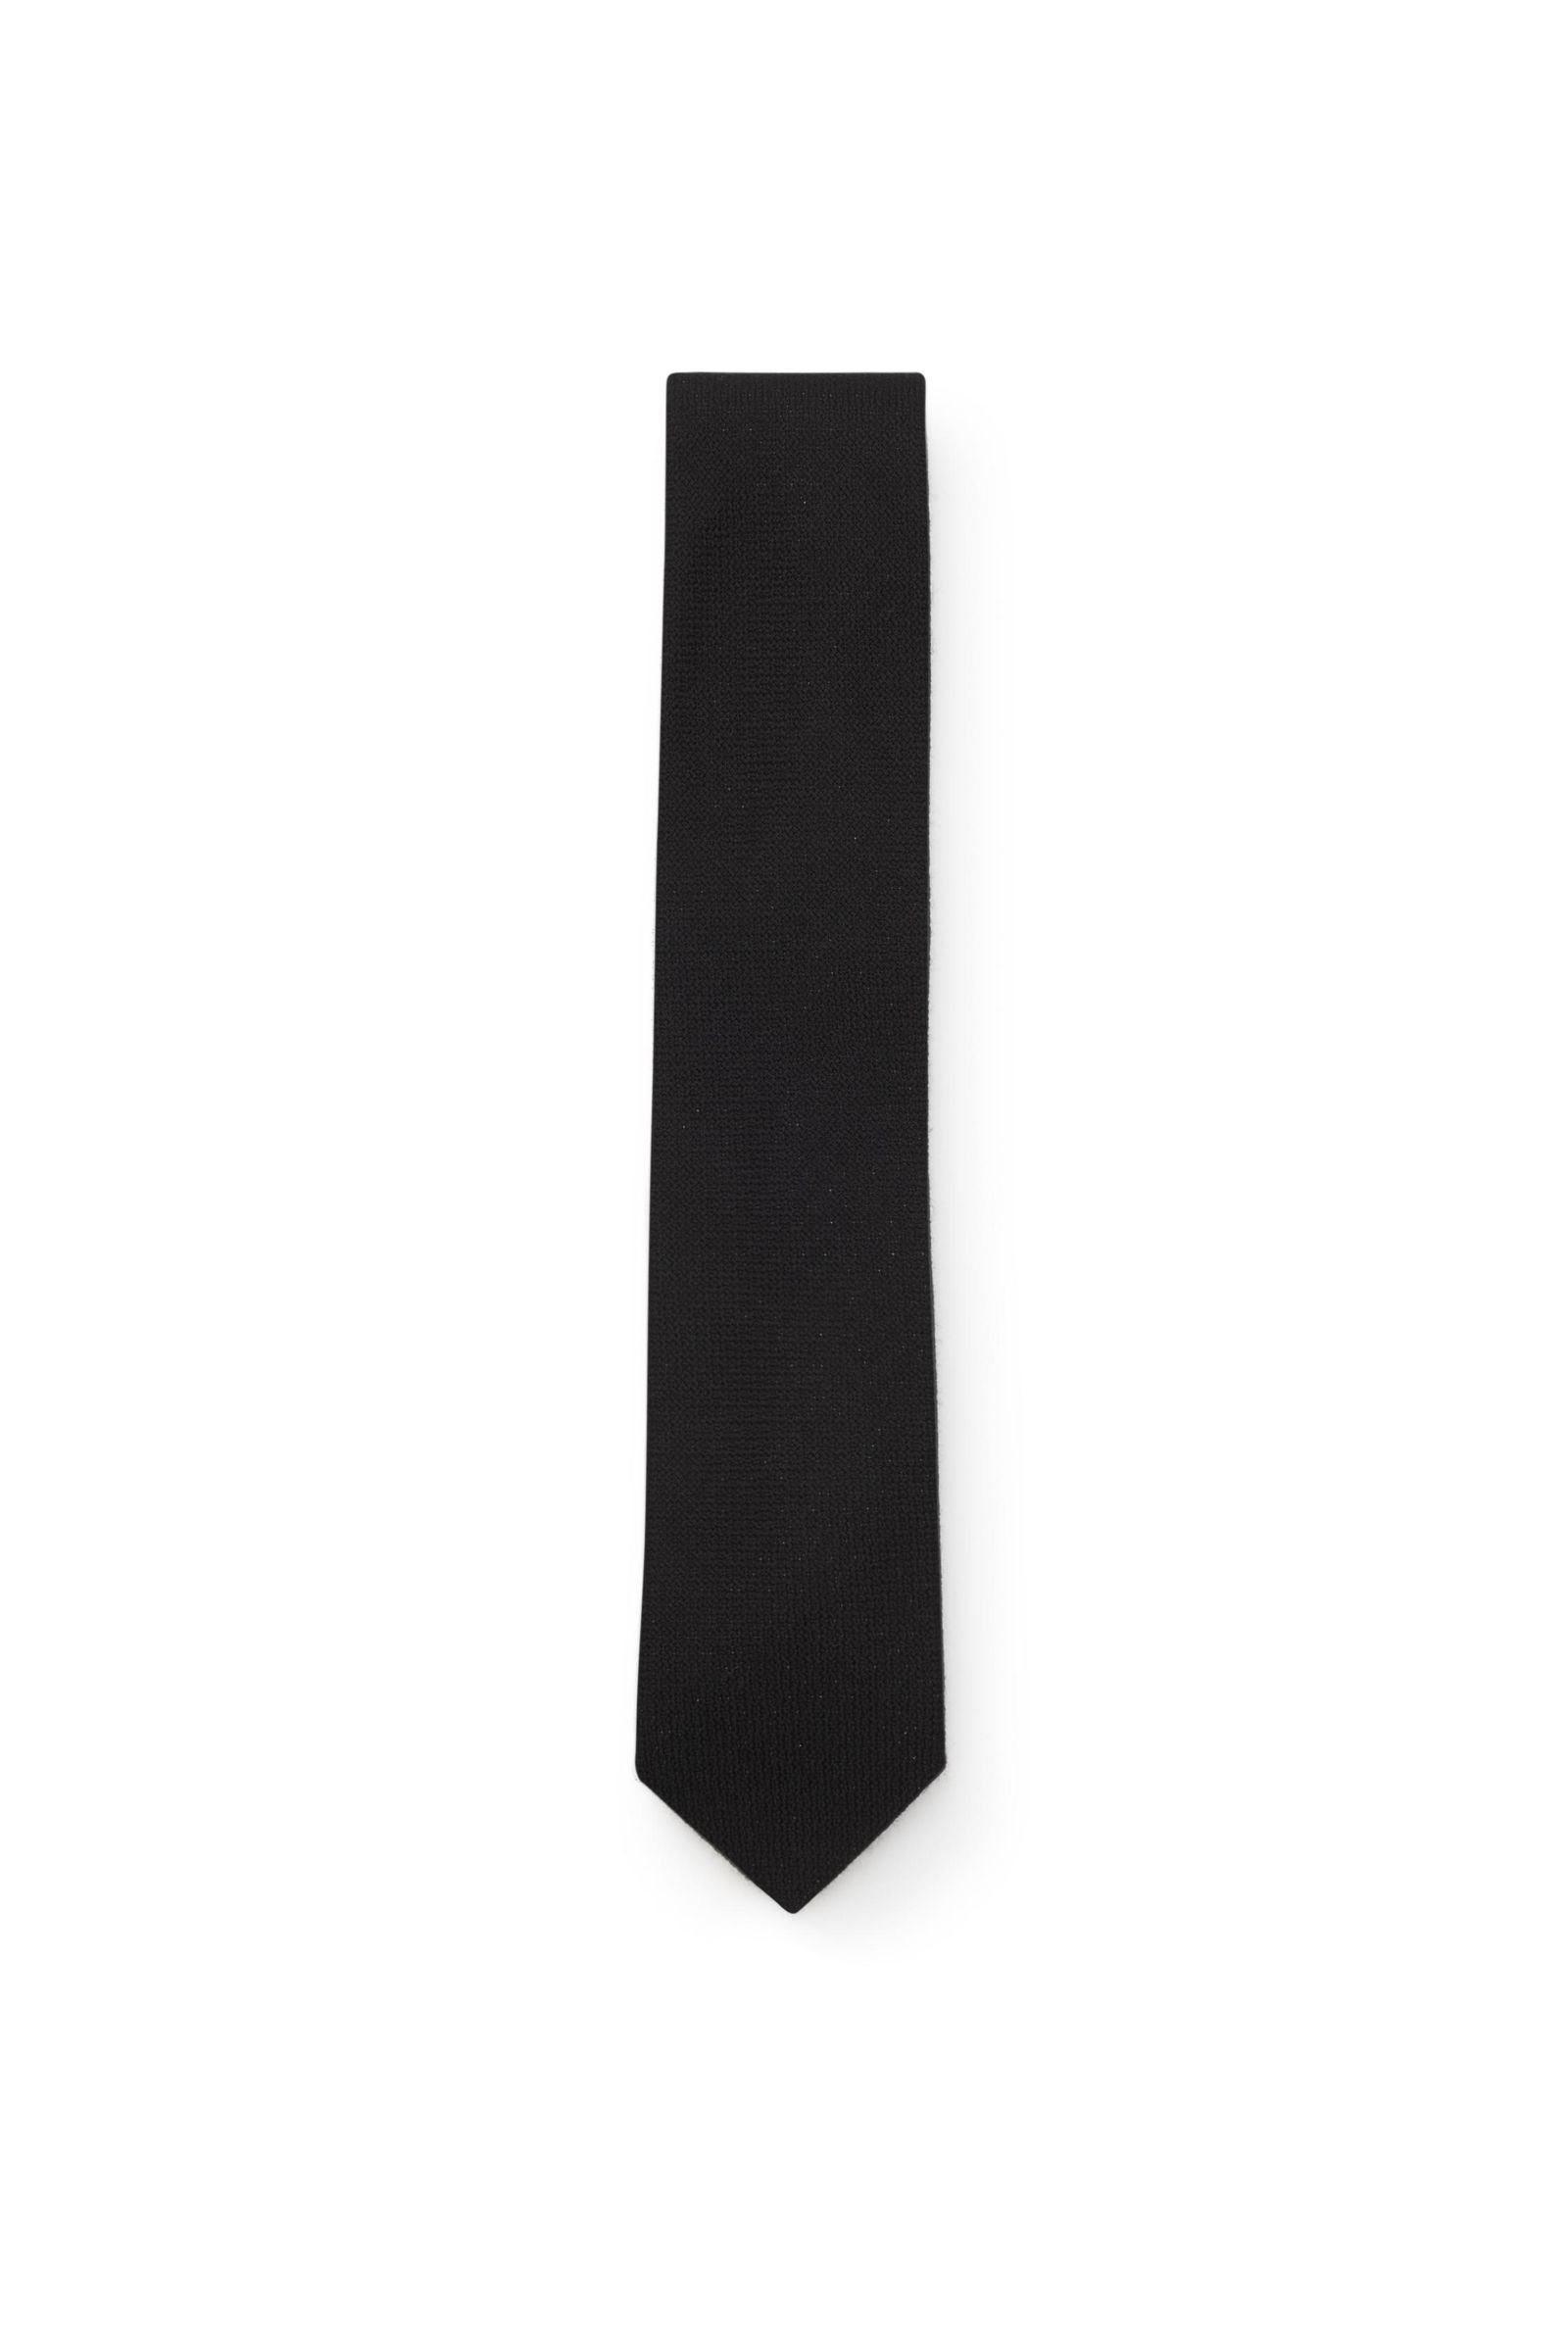 Cashmere tie black